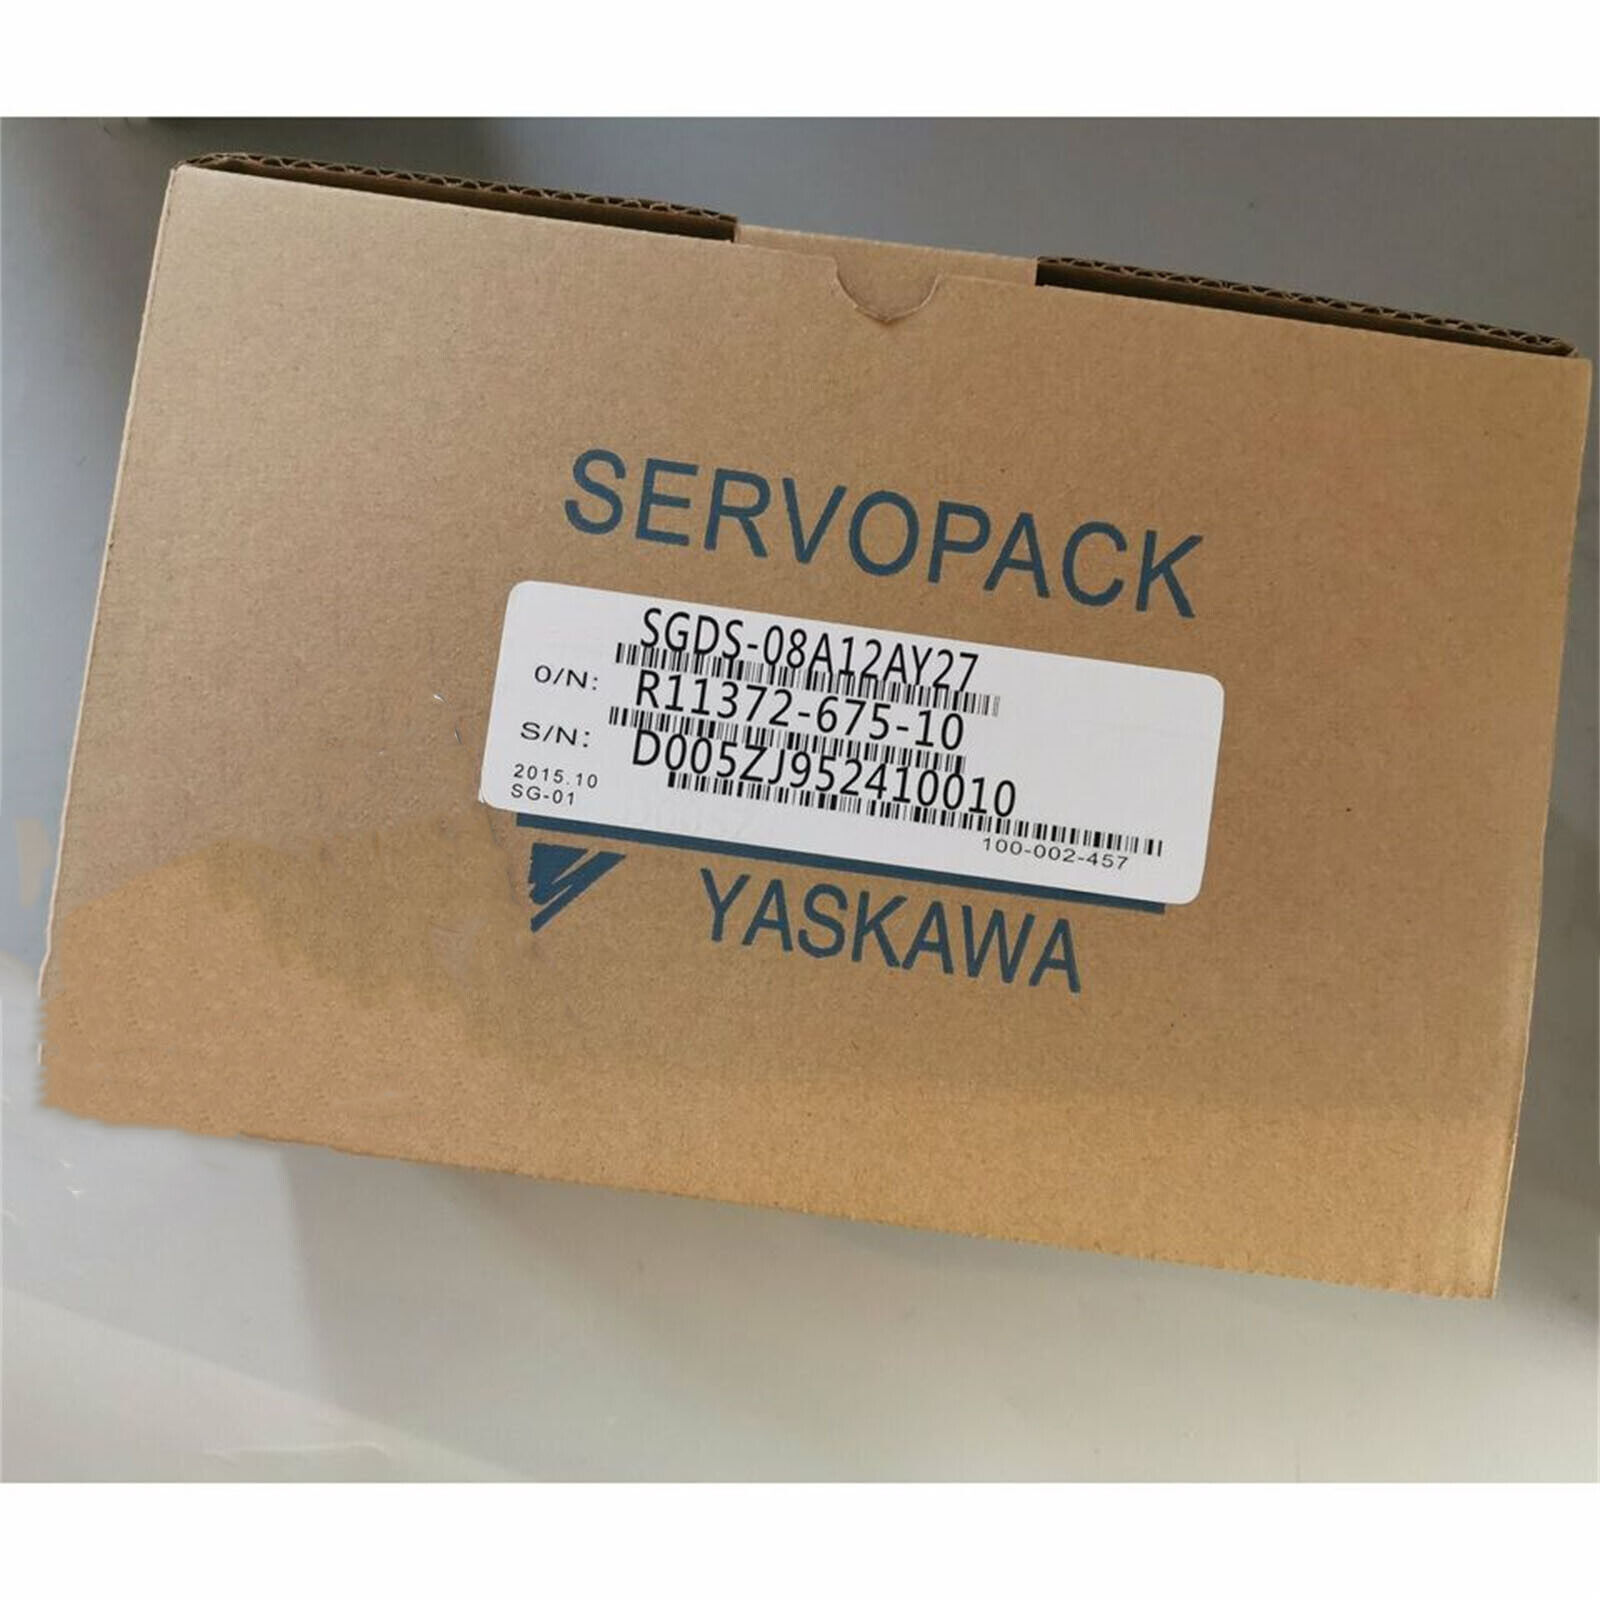 1PC New Yaskawa SGDS-08A12AY27 Servo Drives SGDS08A12AY27 Expedited Shipping